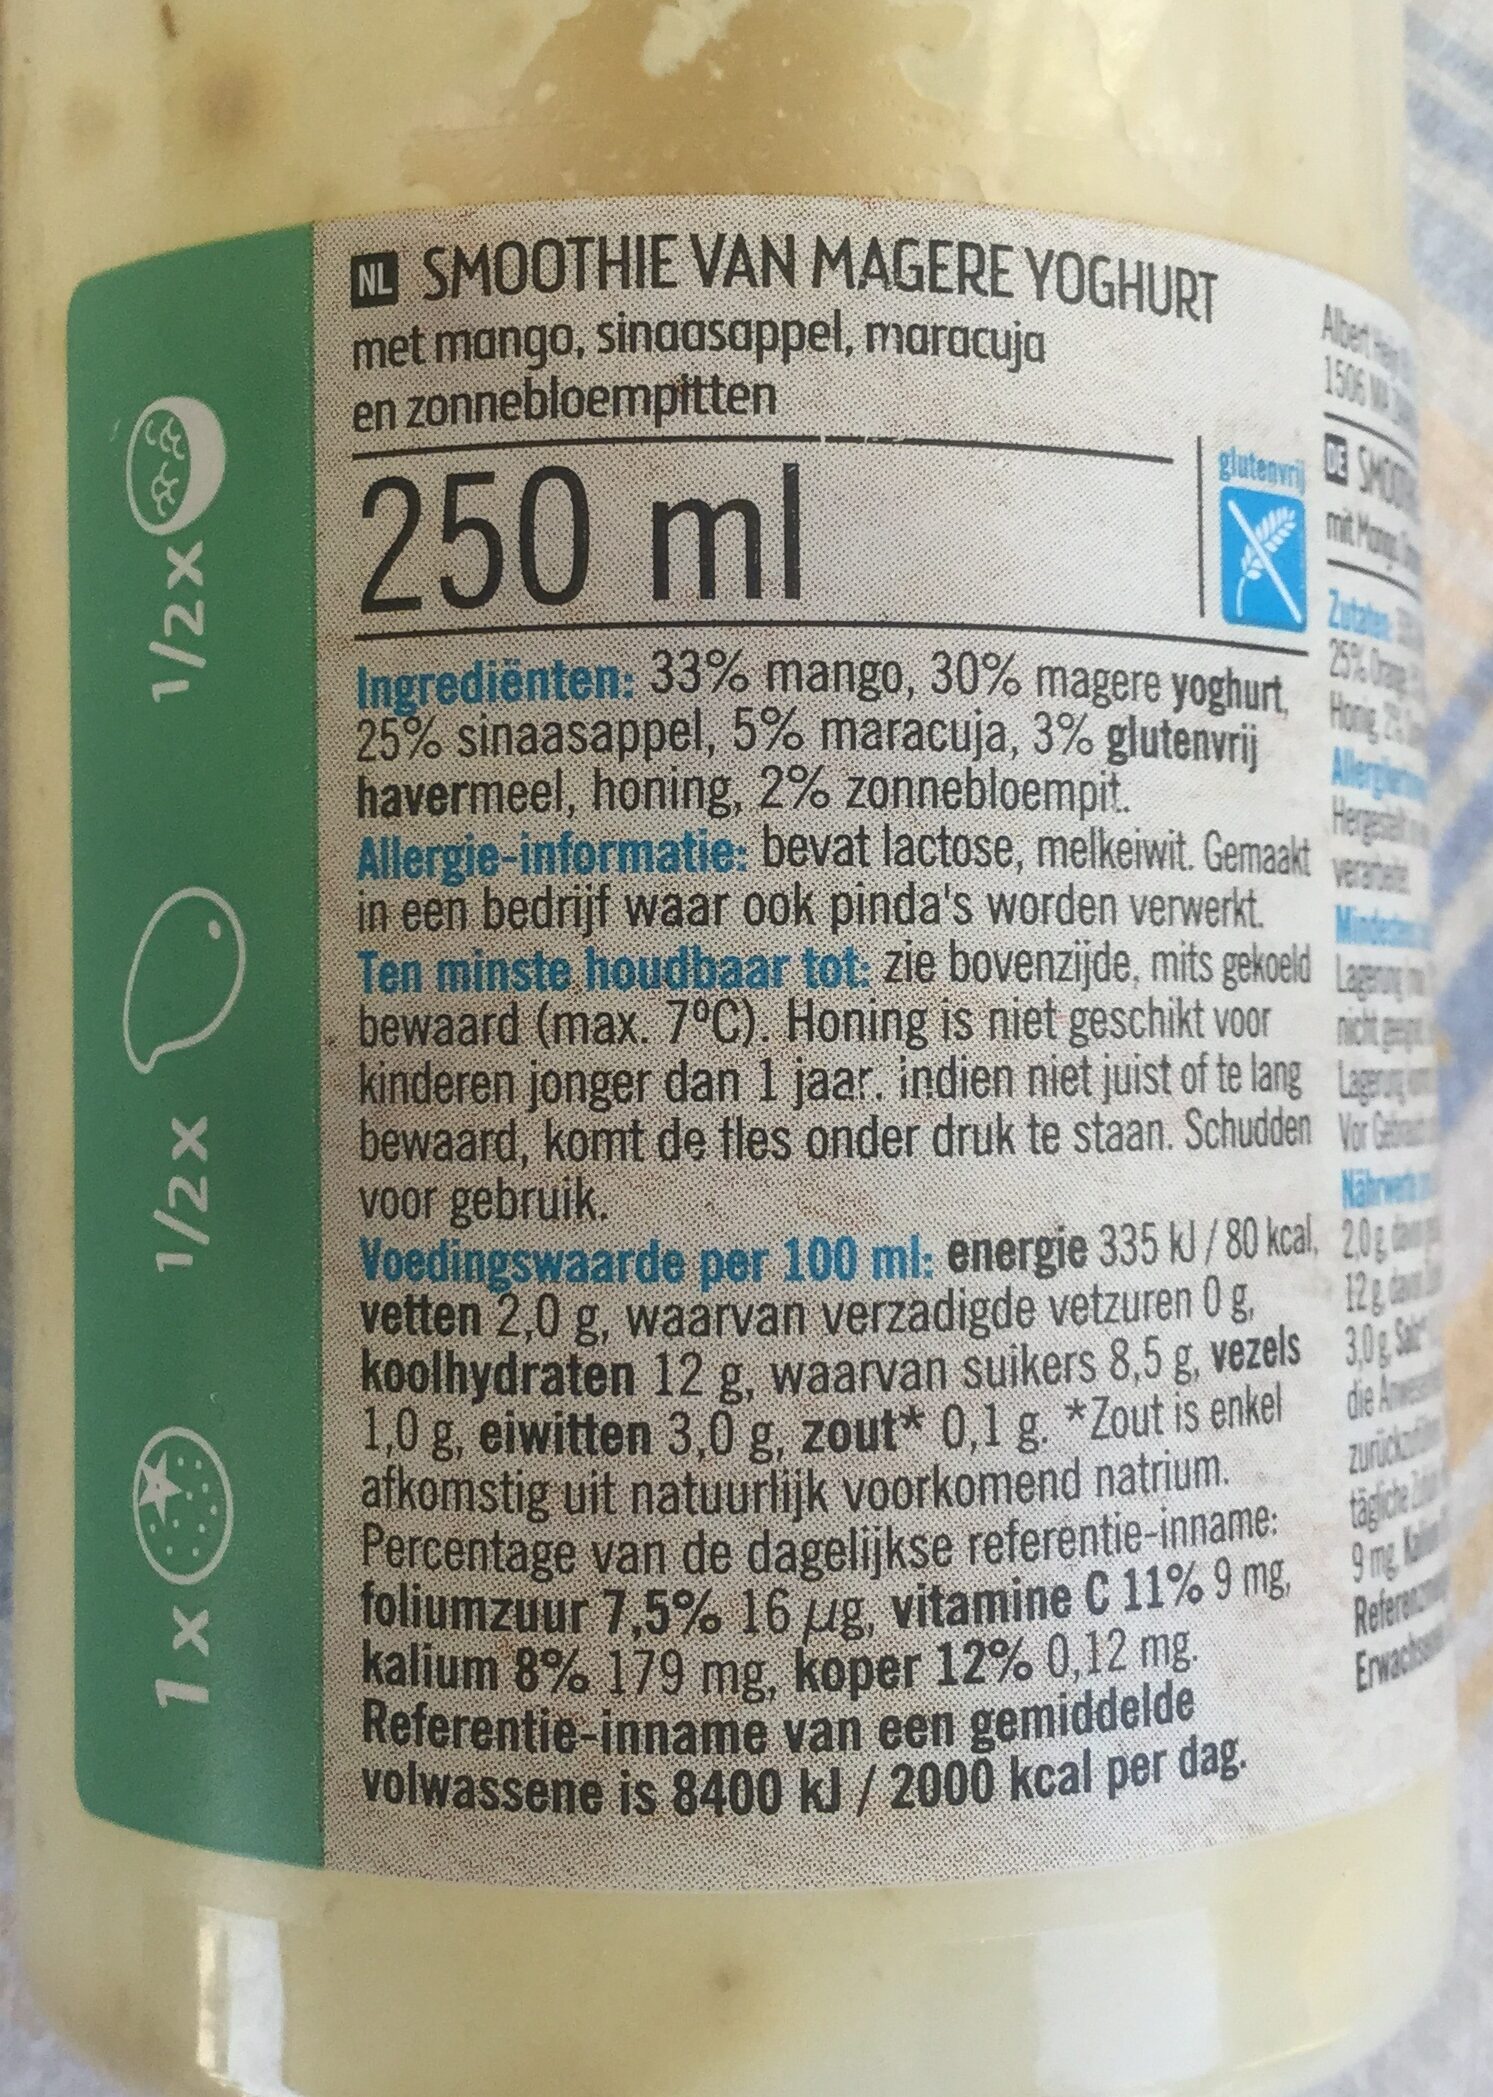 Smoothie van magere yoghurt - Product - nl